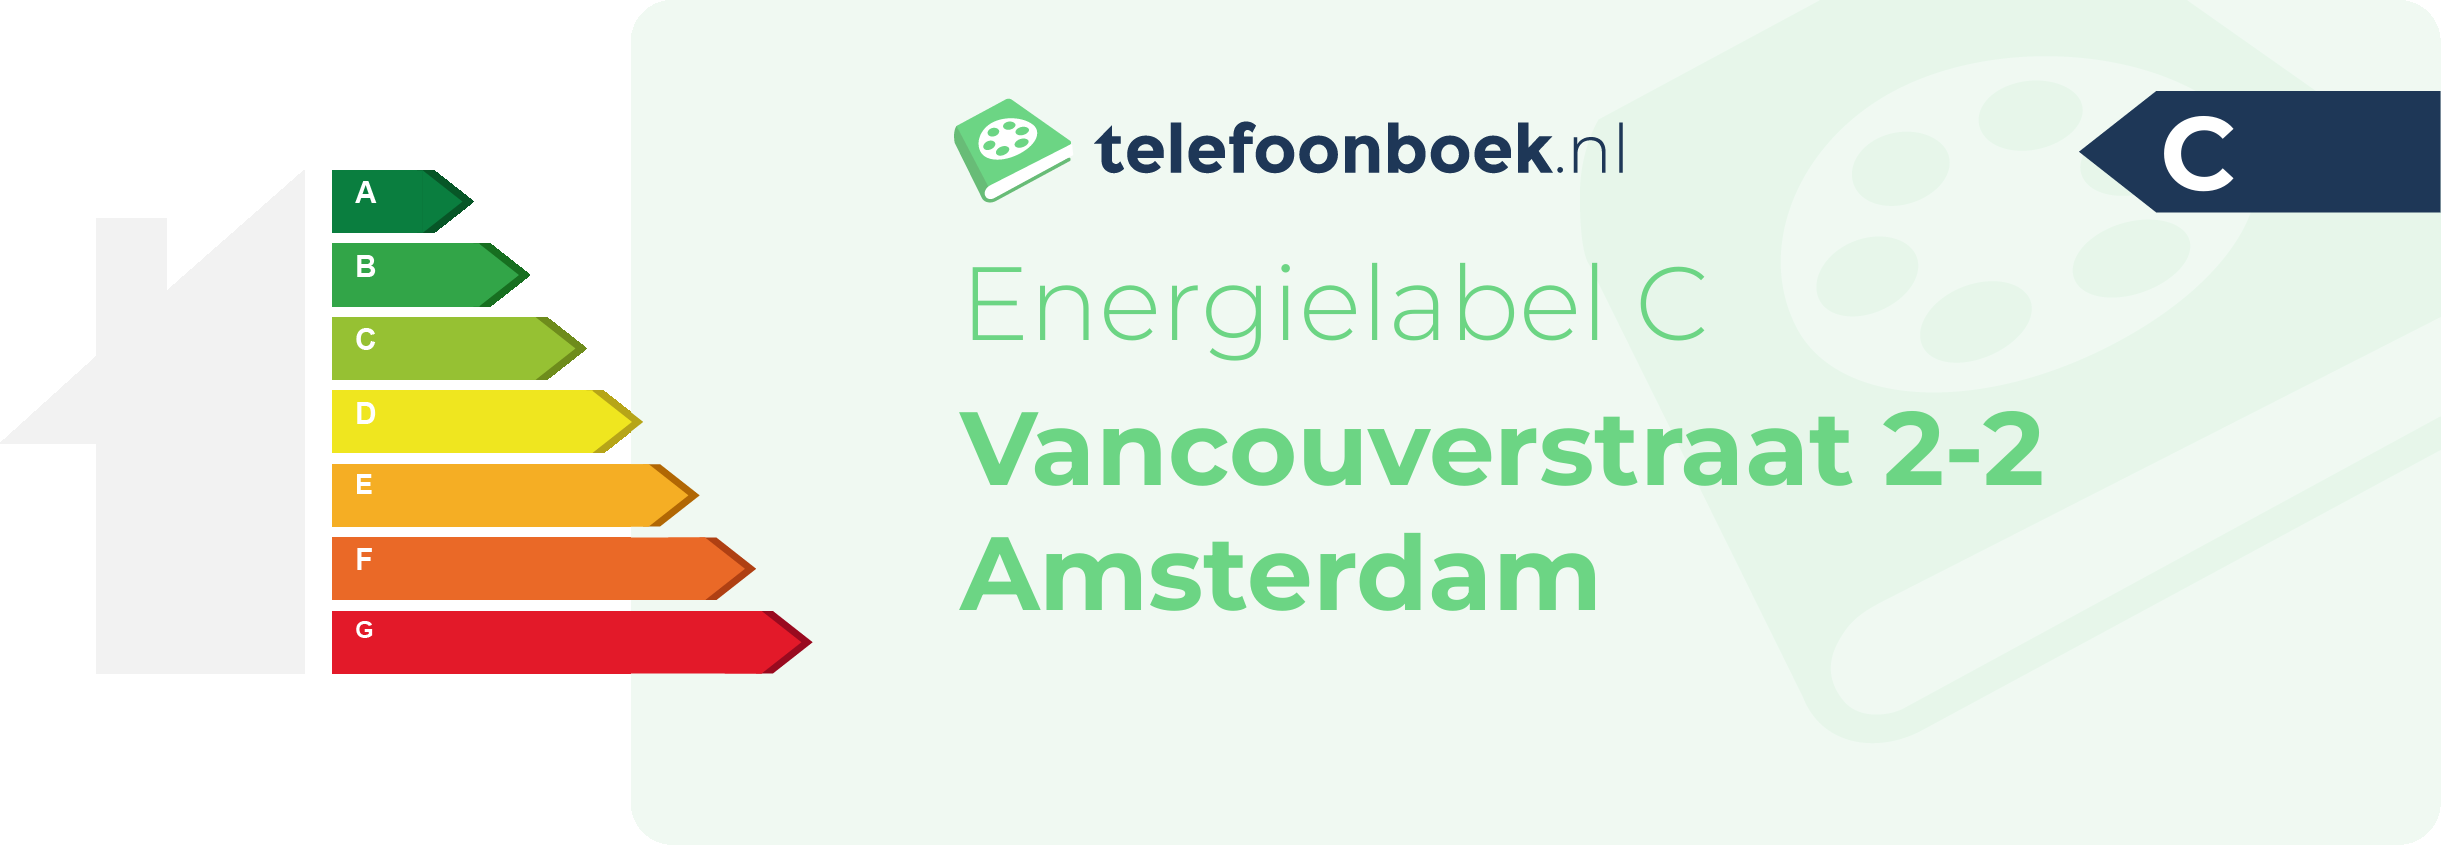 Energielabel Vancouverstraat 2-2 Amsterdam